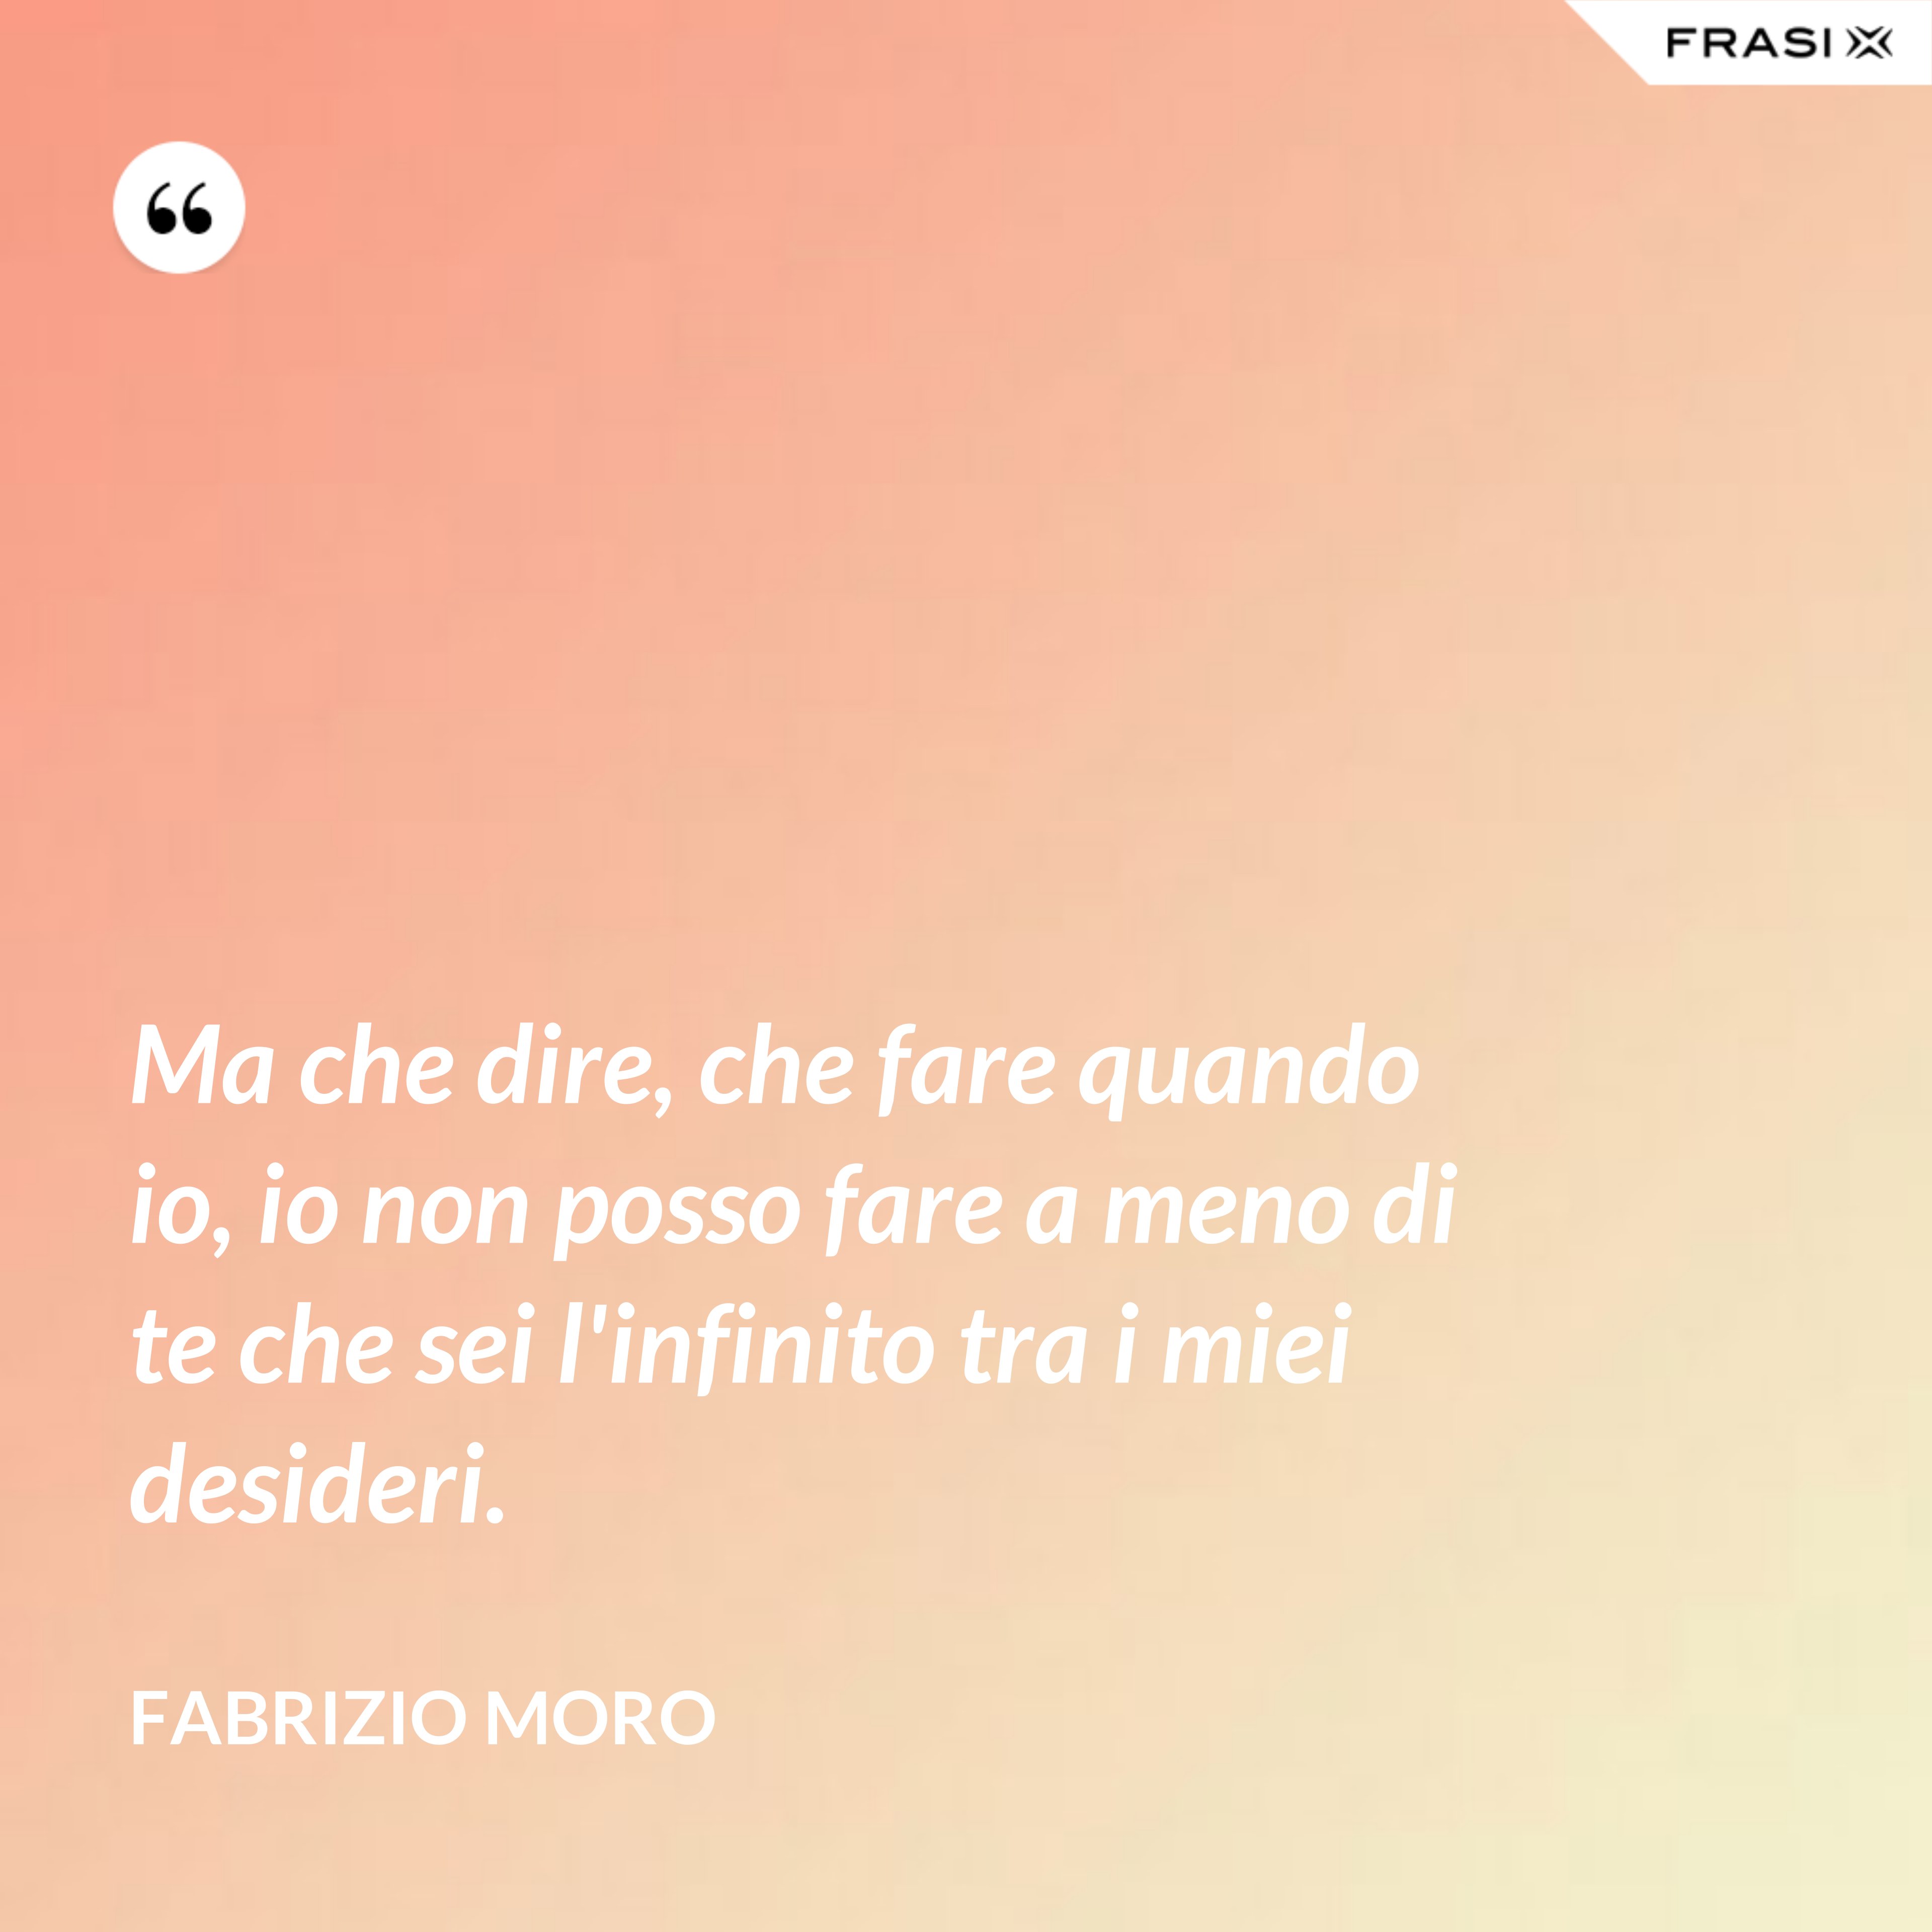 Ma che dire, che fare quando io, io non posso fare a meno di te che sei l'infinito tra i miei desideri. - Fabrizio Moro